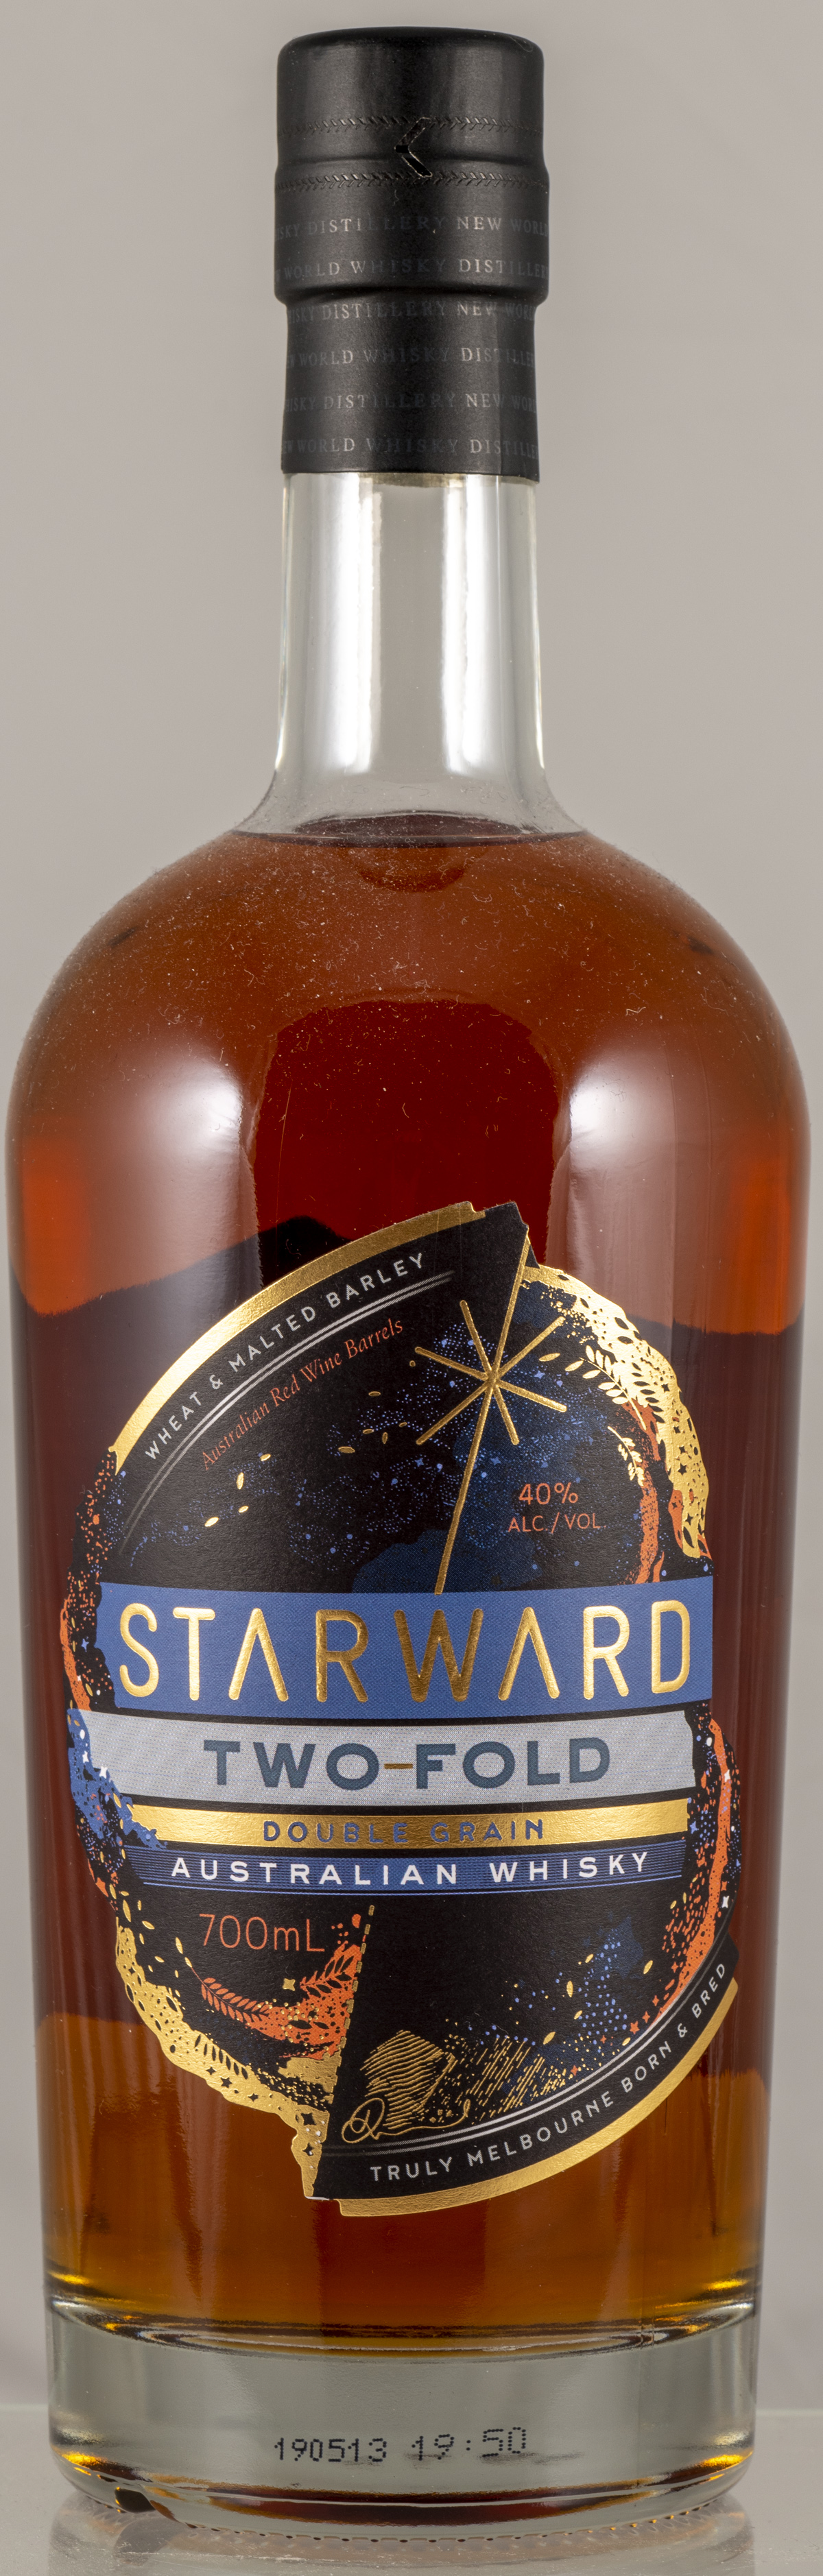 Billede: PHC_6991 - Starward Two Fold - bottle front.jpg